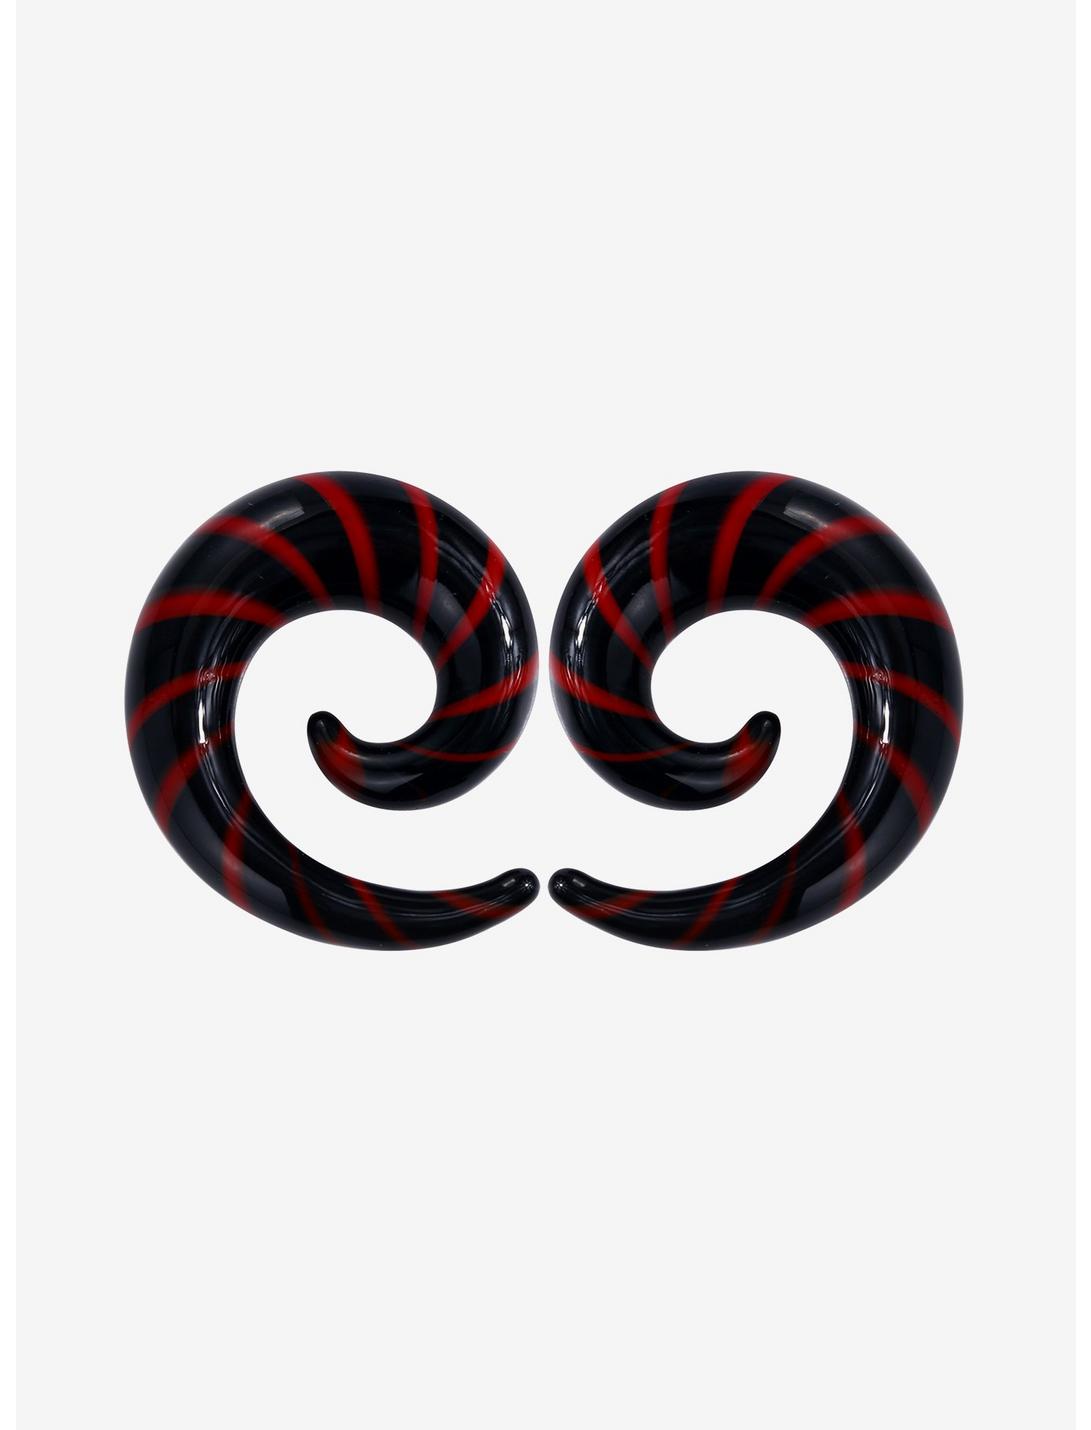 Glass Red & Black Stripe Spiral Hanger Taper Plug 2 Pack, BLACK, hi-res